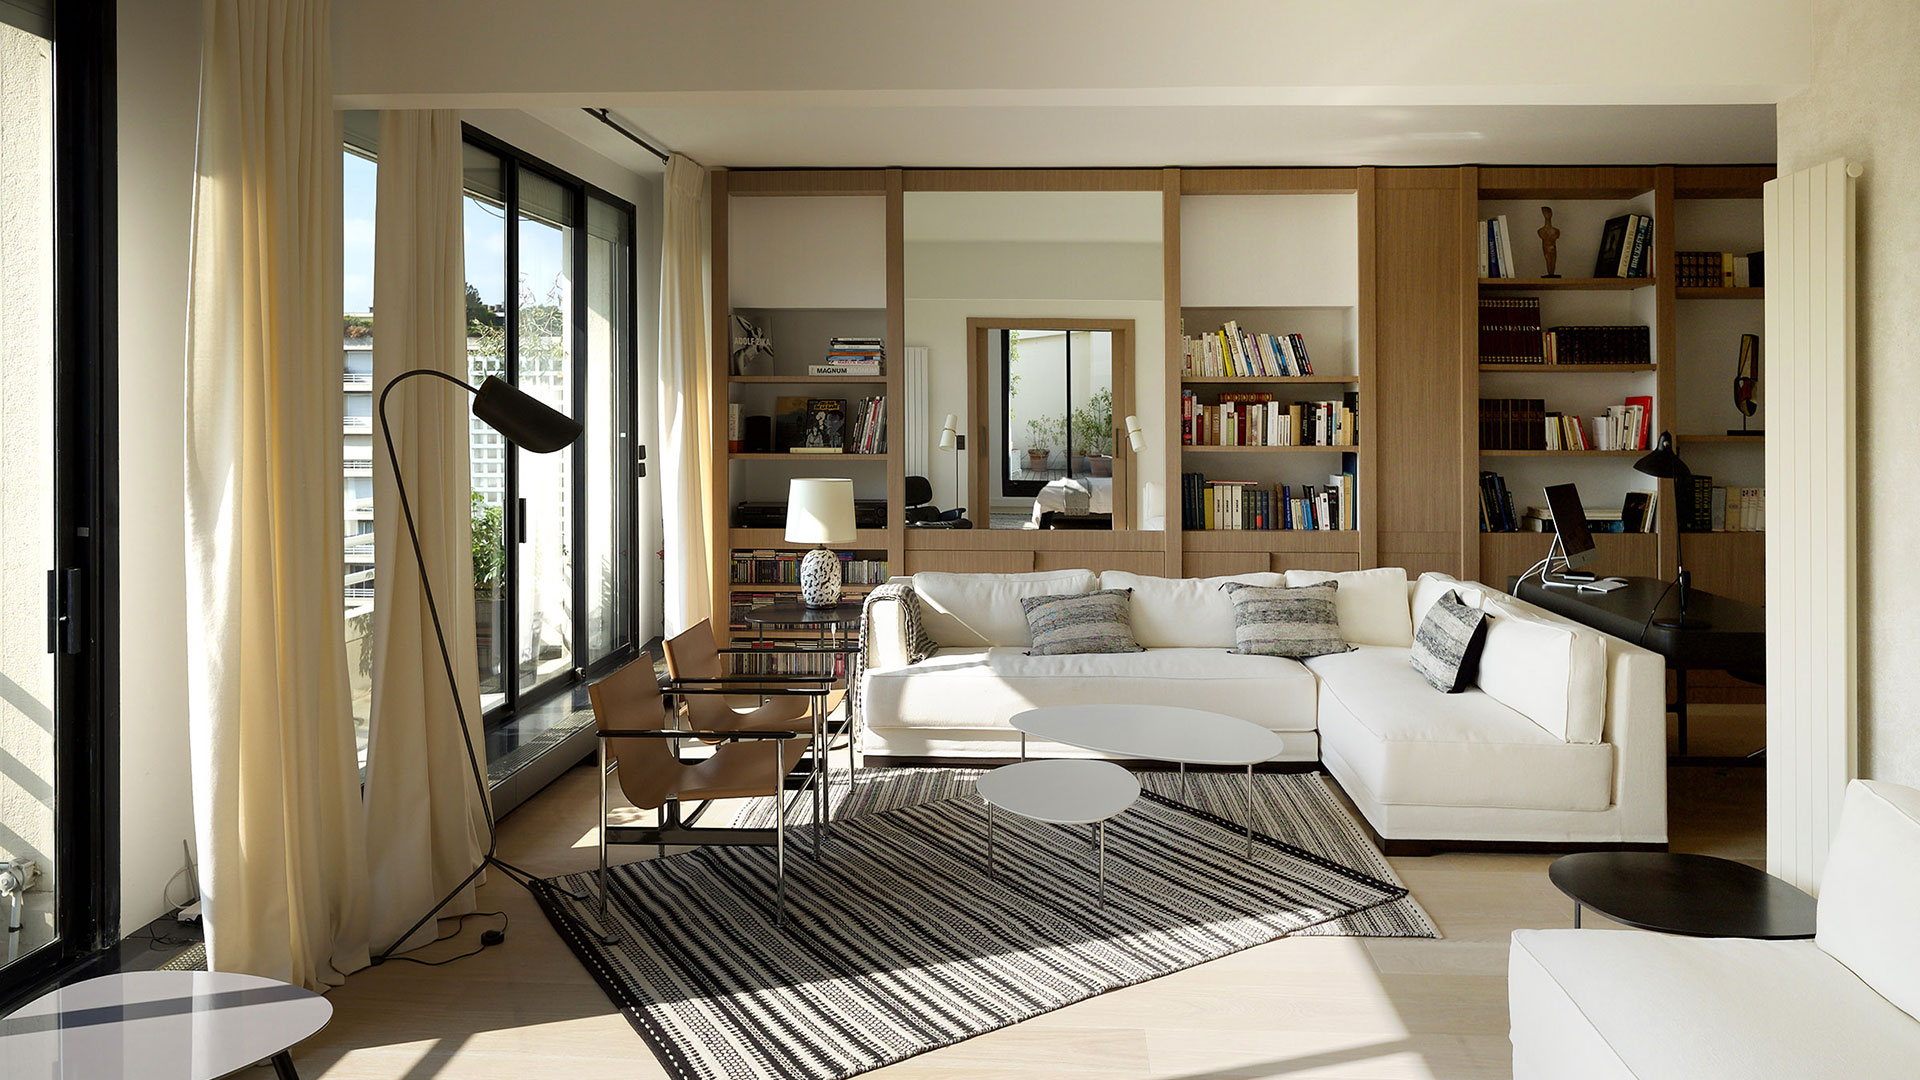 Sejour salon jour ambiance cosy tapis pastel moderne architecture interieur